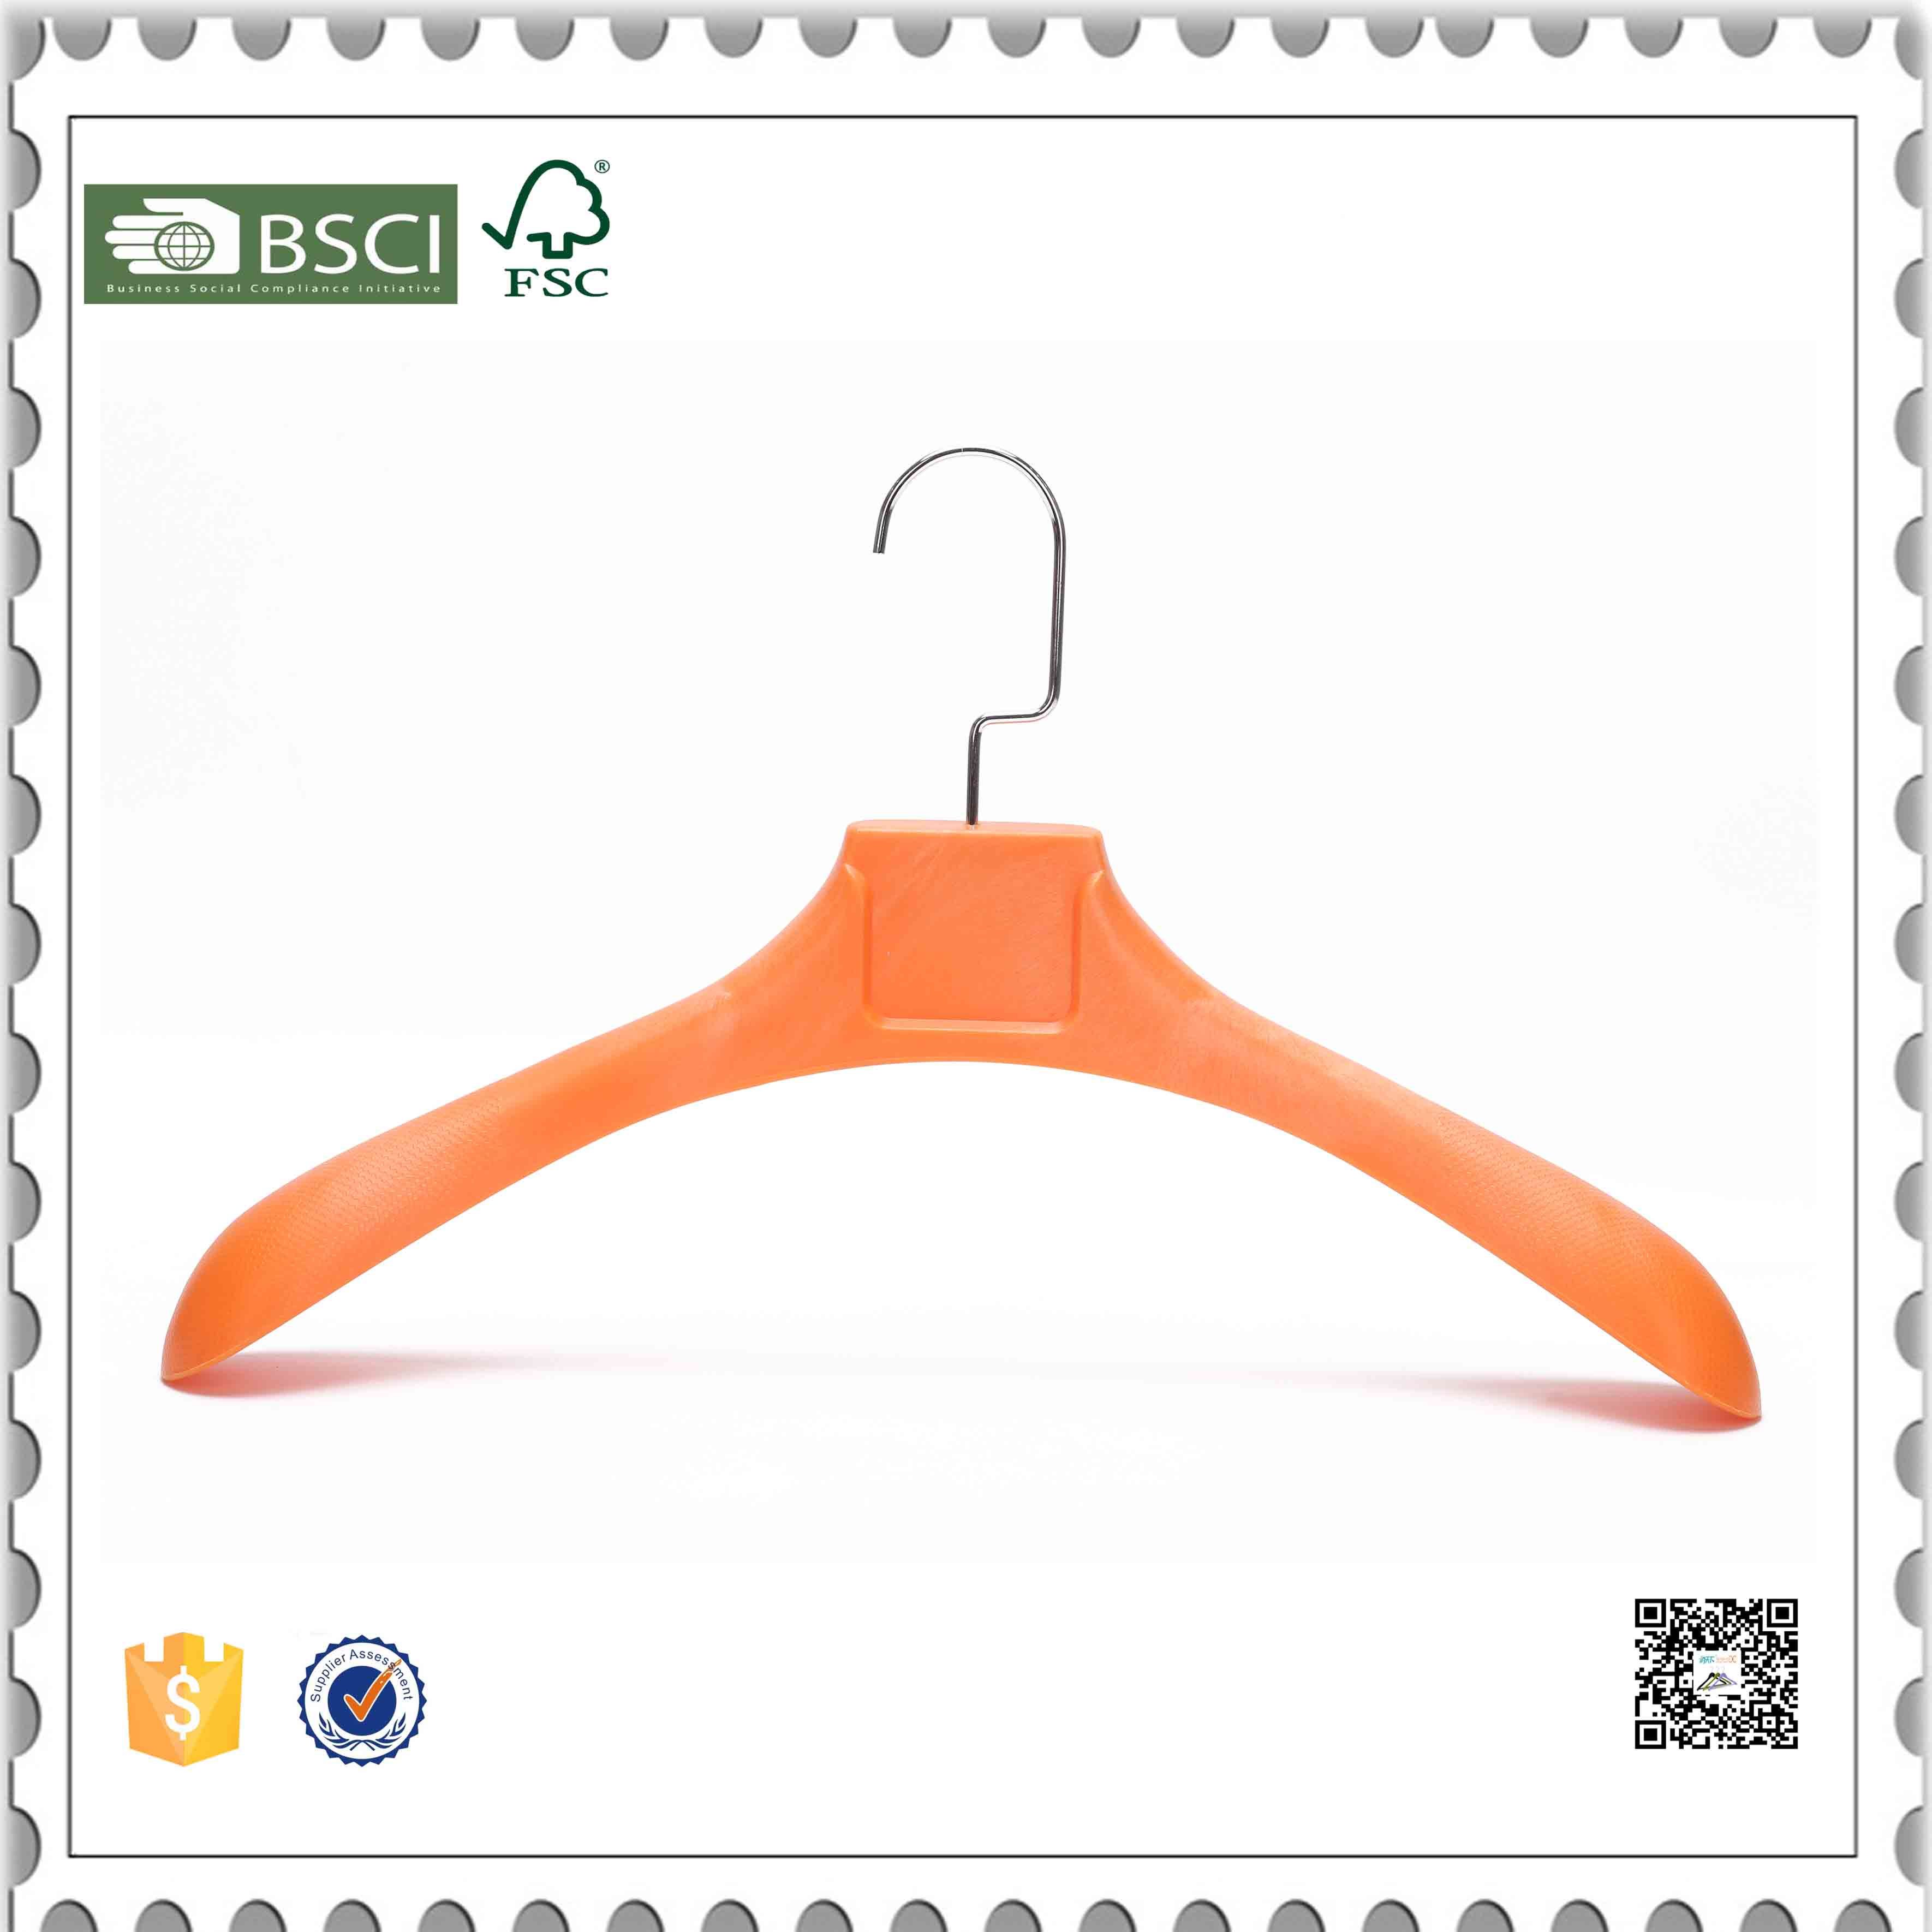 Custom Orange Plastic Coat Hangers Suit Hangers for Shop Display